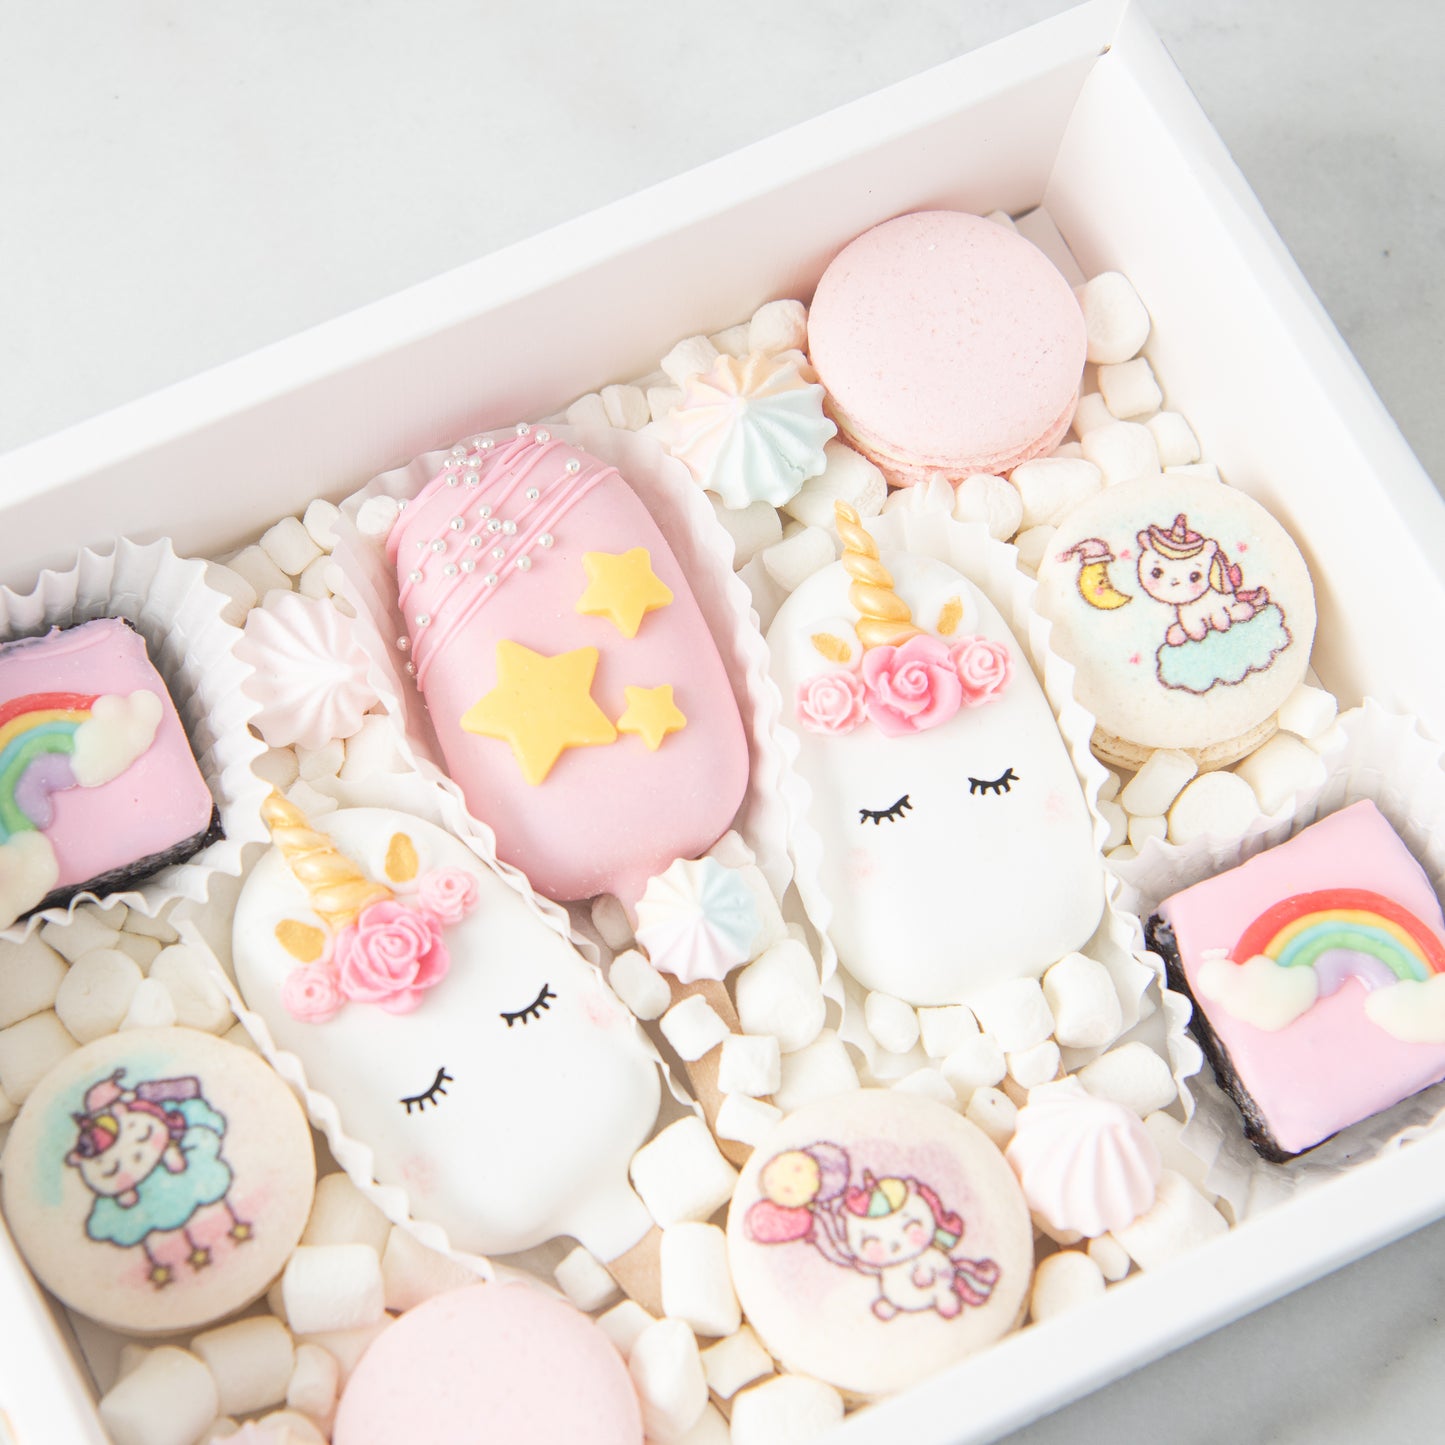 Pink Unicorn Cakesicle Set In Gift Box | $48.80 Nett